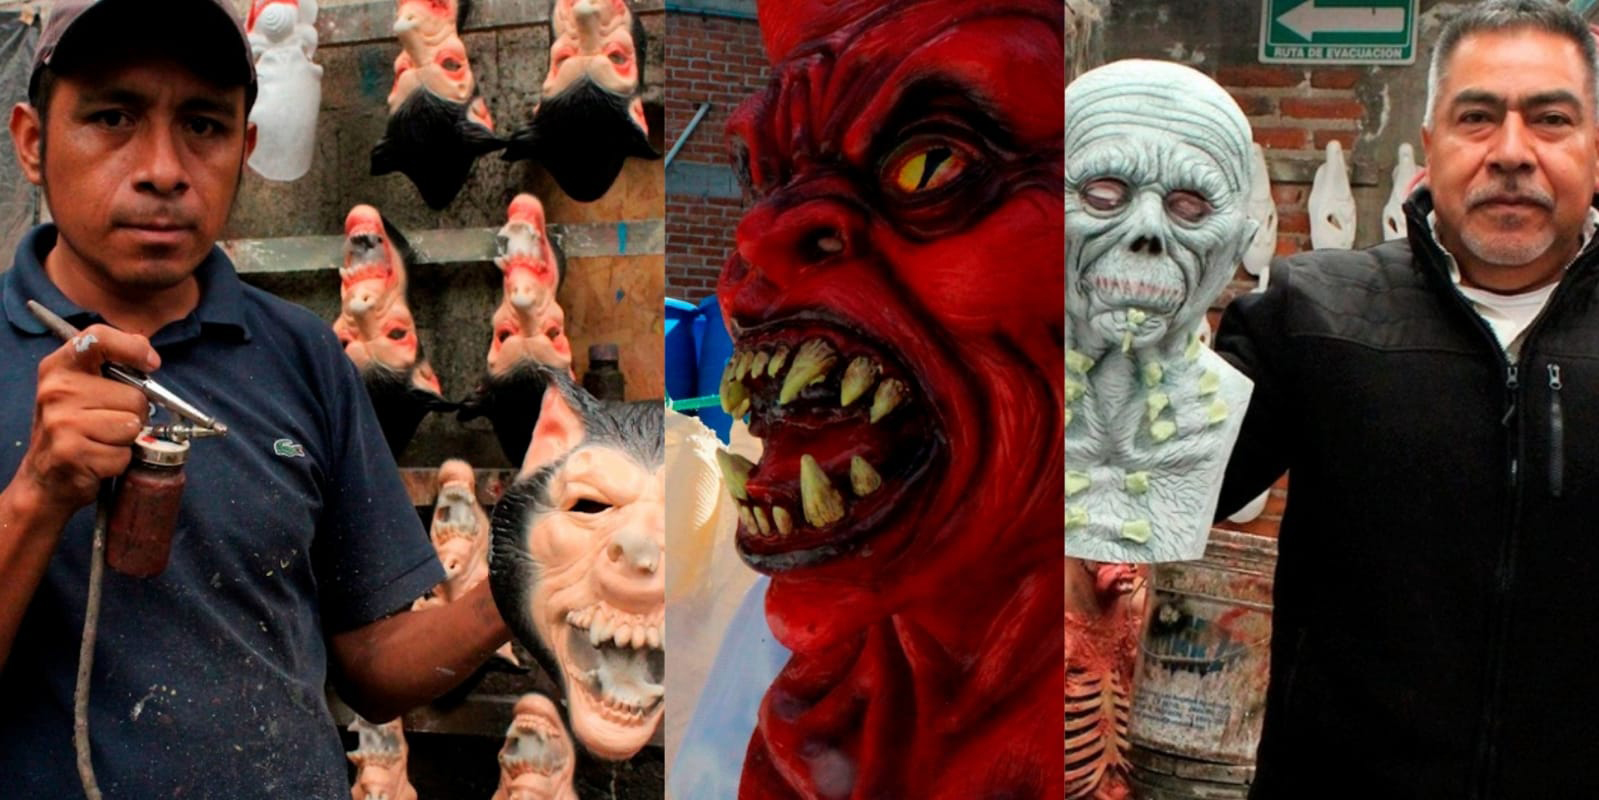 Monstermanía, fábrica mexicana que elabora máscaras para el Día de Muertos y Halloween | El Imparcial de Oaxaca